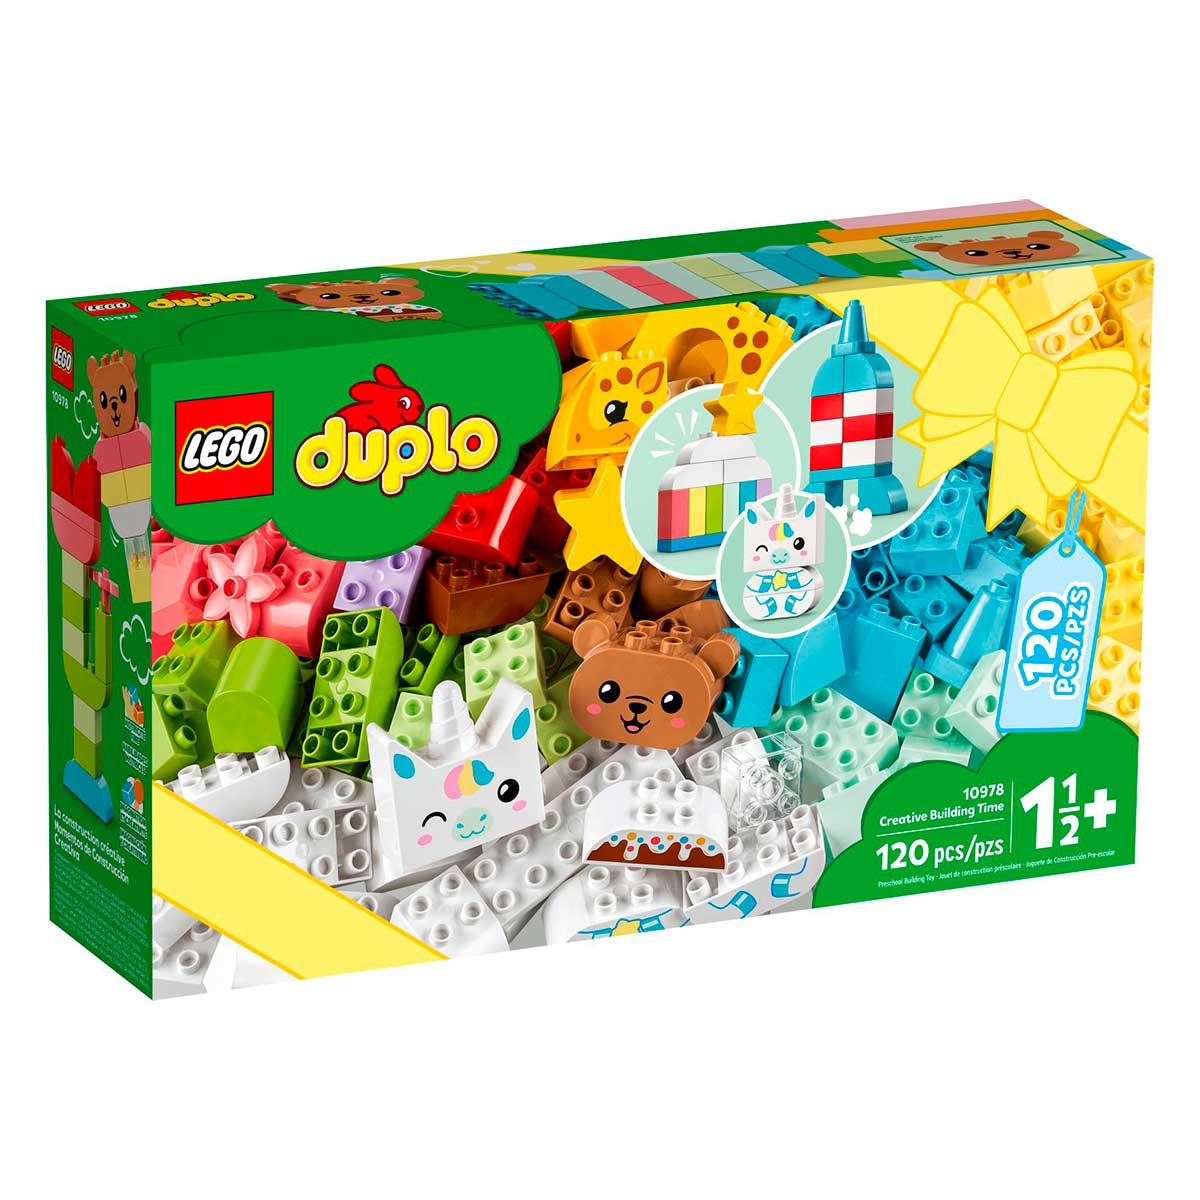 LEGO DUPLO - Hora de Construção Criativa - 10978